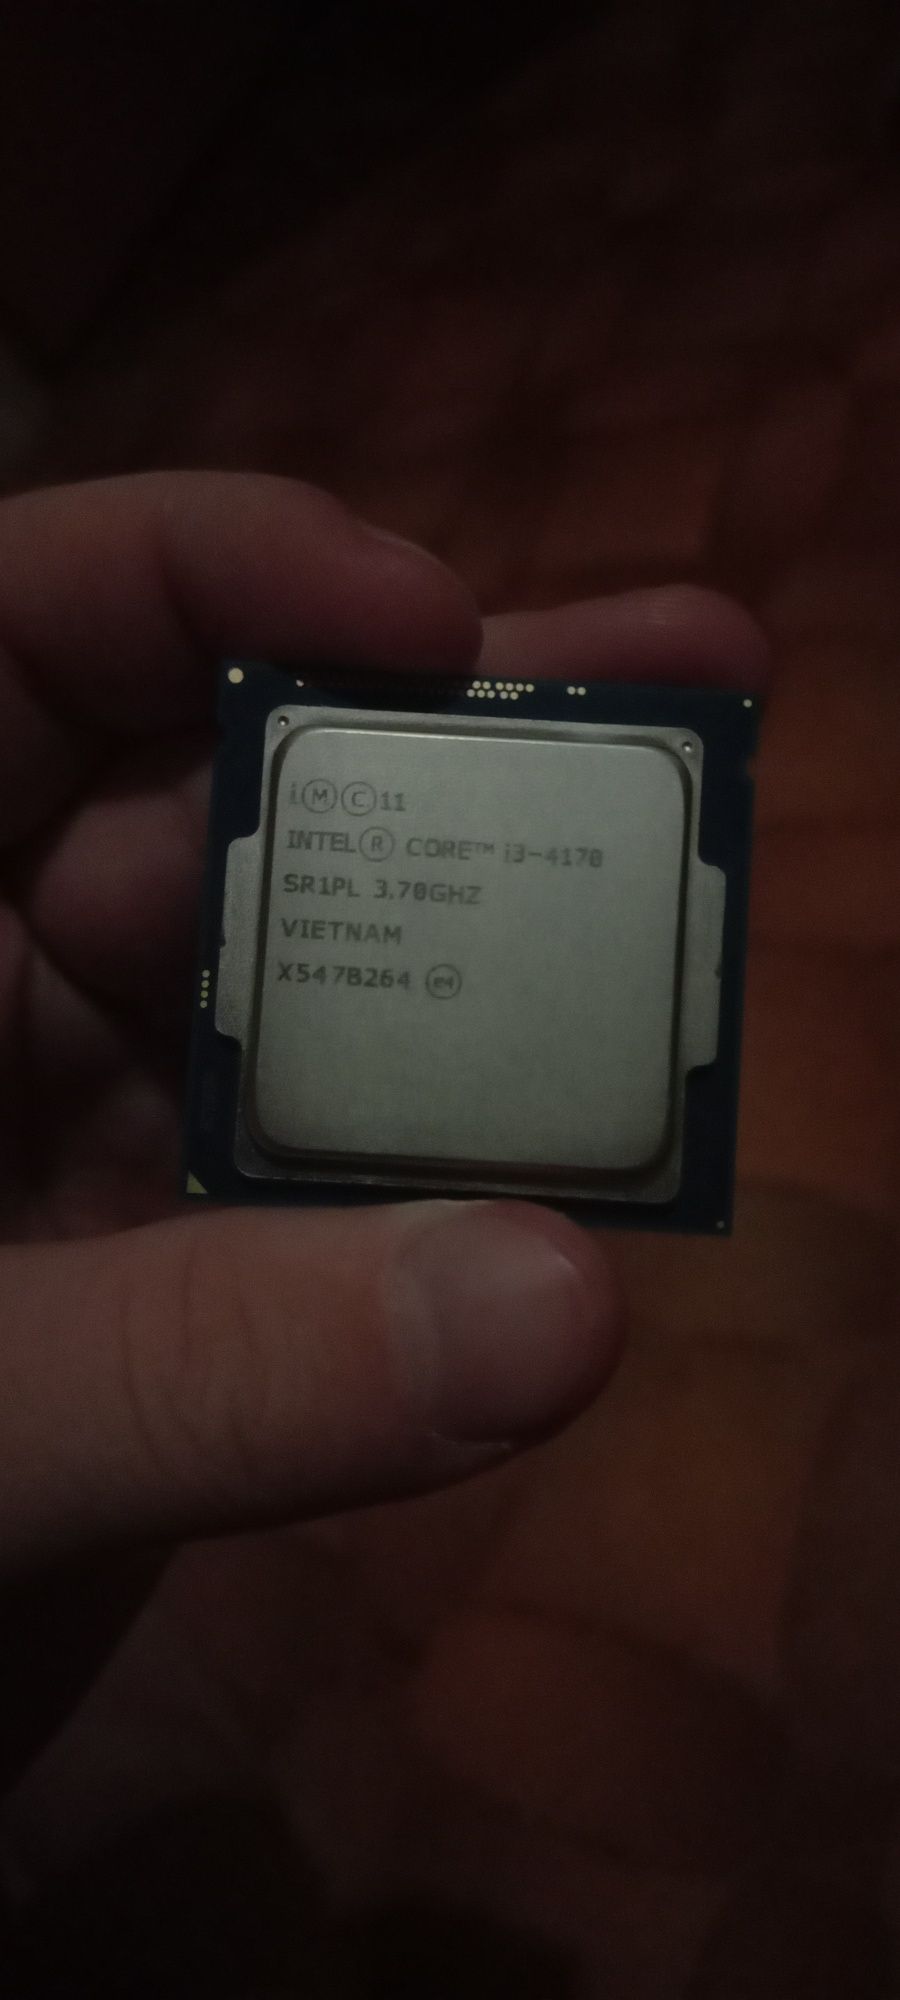 Процессор Intel Core i3-4170, 3.70Ghz, четвёртого поколения(4170).